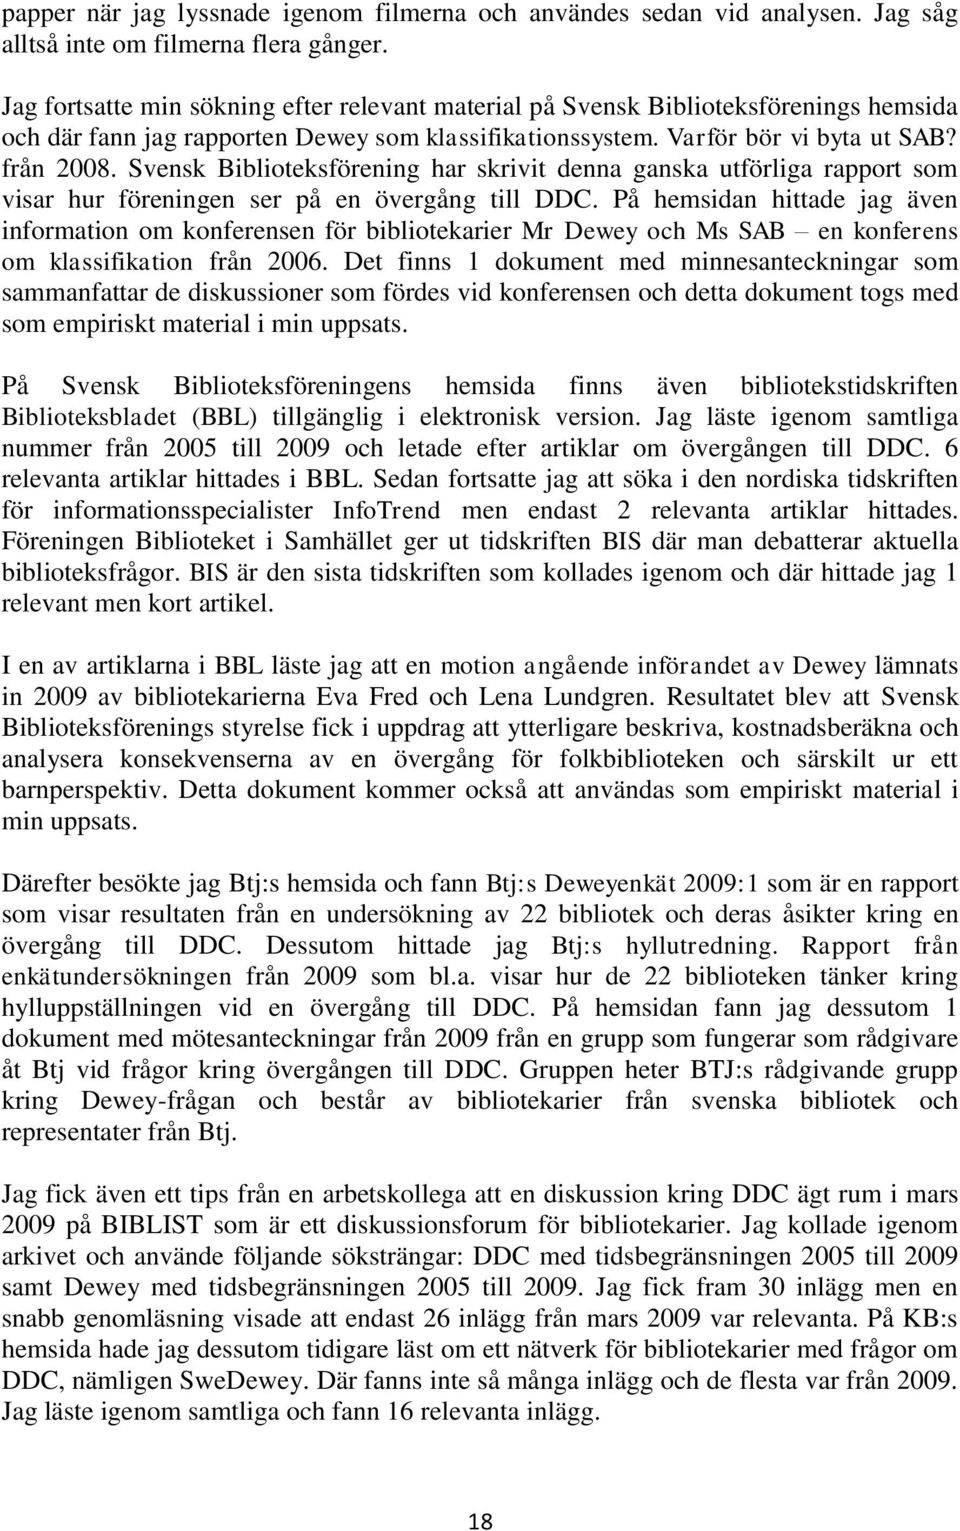 Svensk Biblioteksförening har skrivit denna ganska utförliga rapport som visar hur föreningen ser på en övergång till DDC.